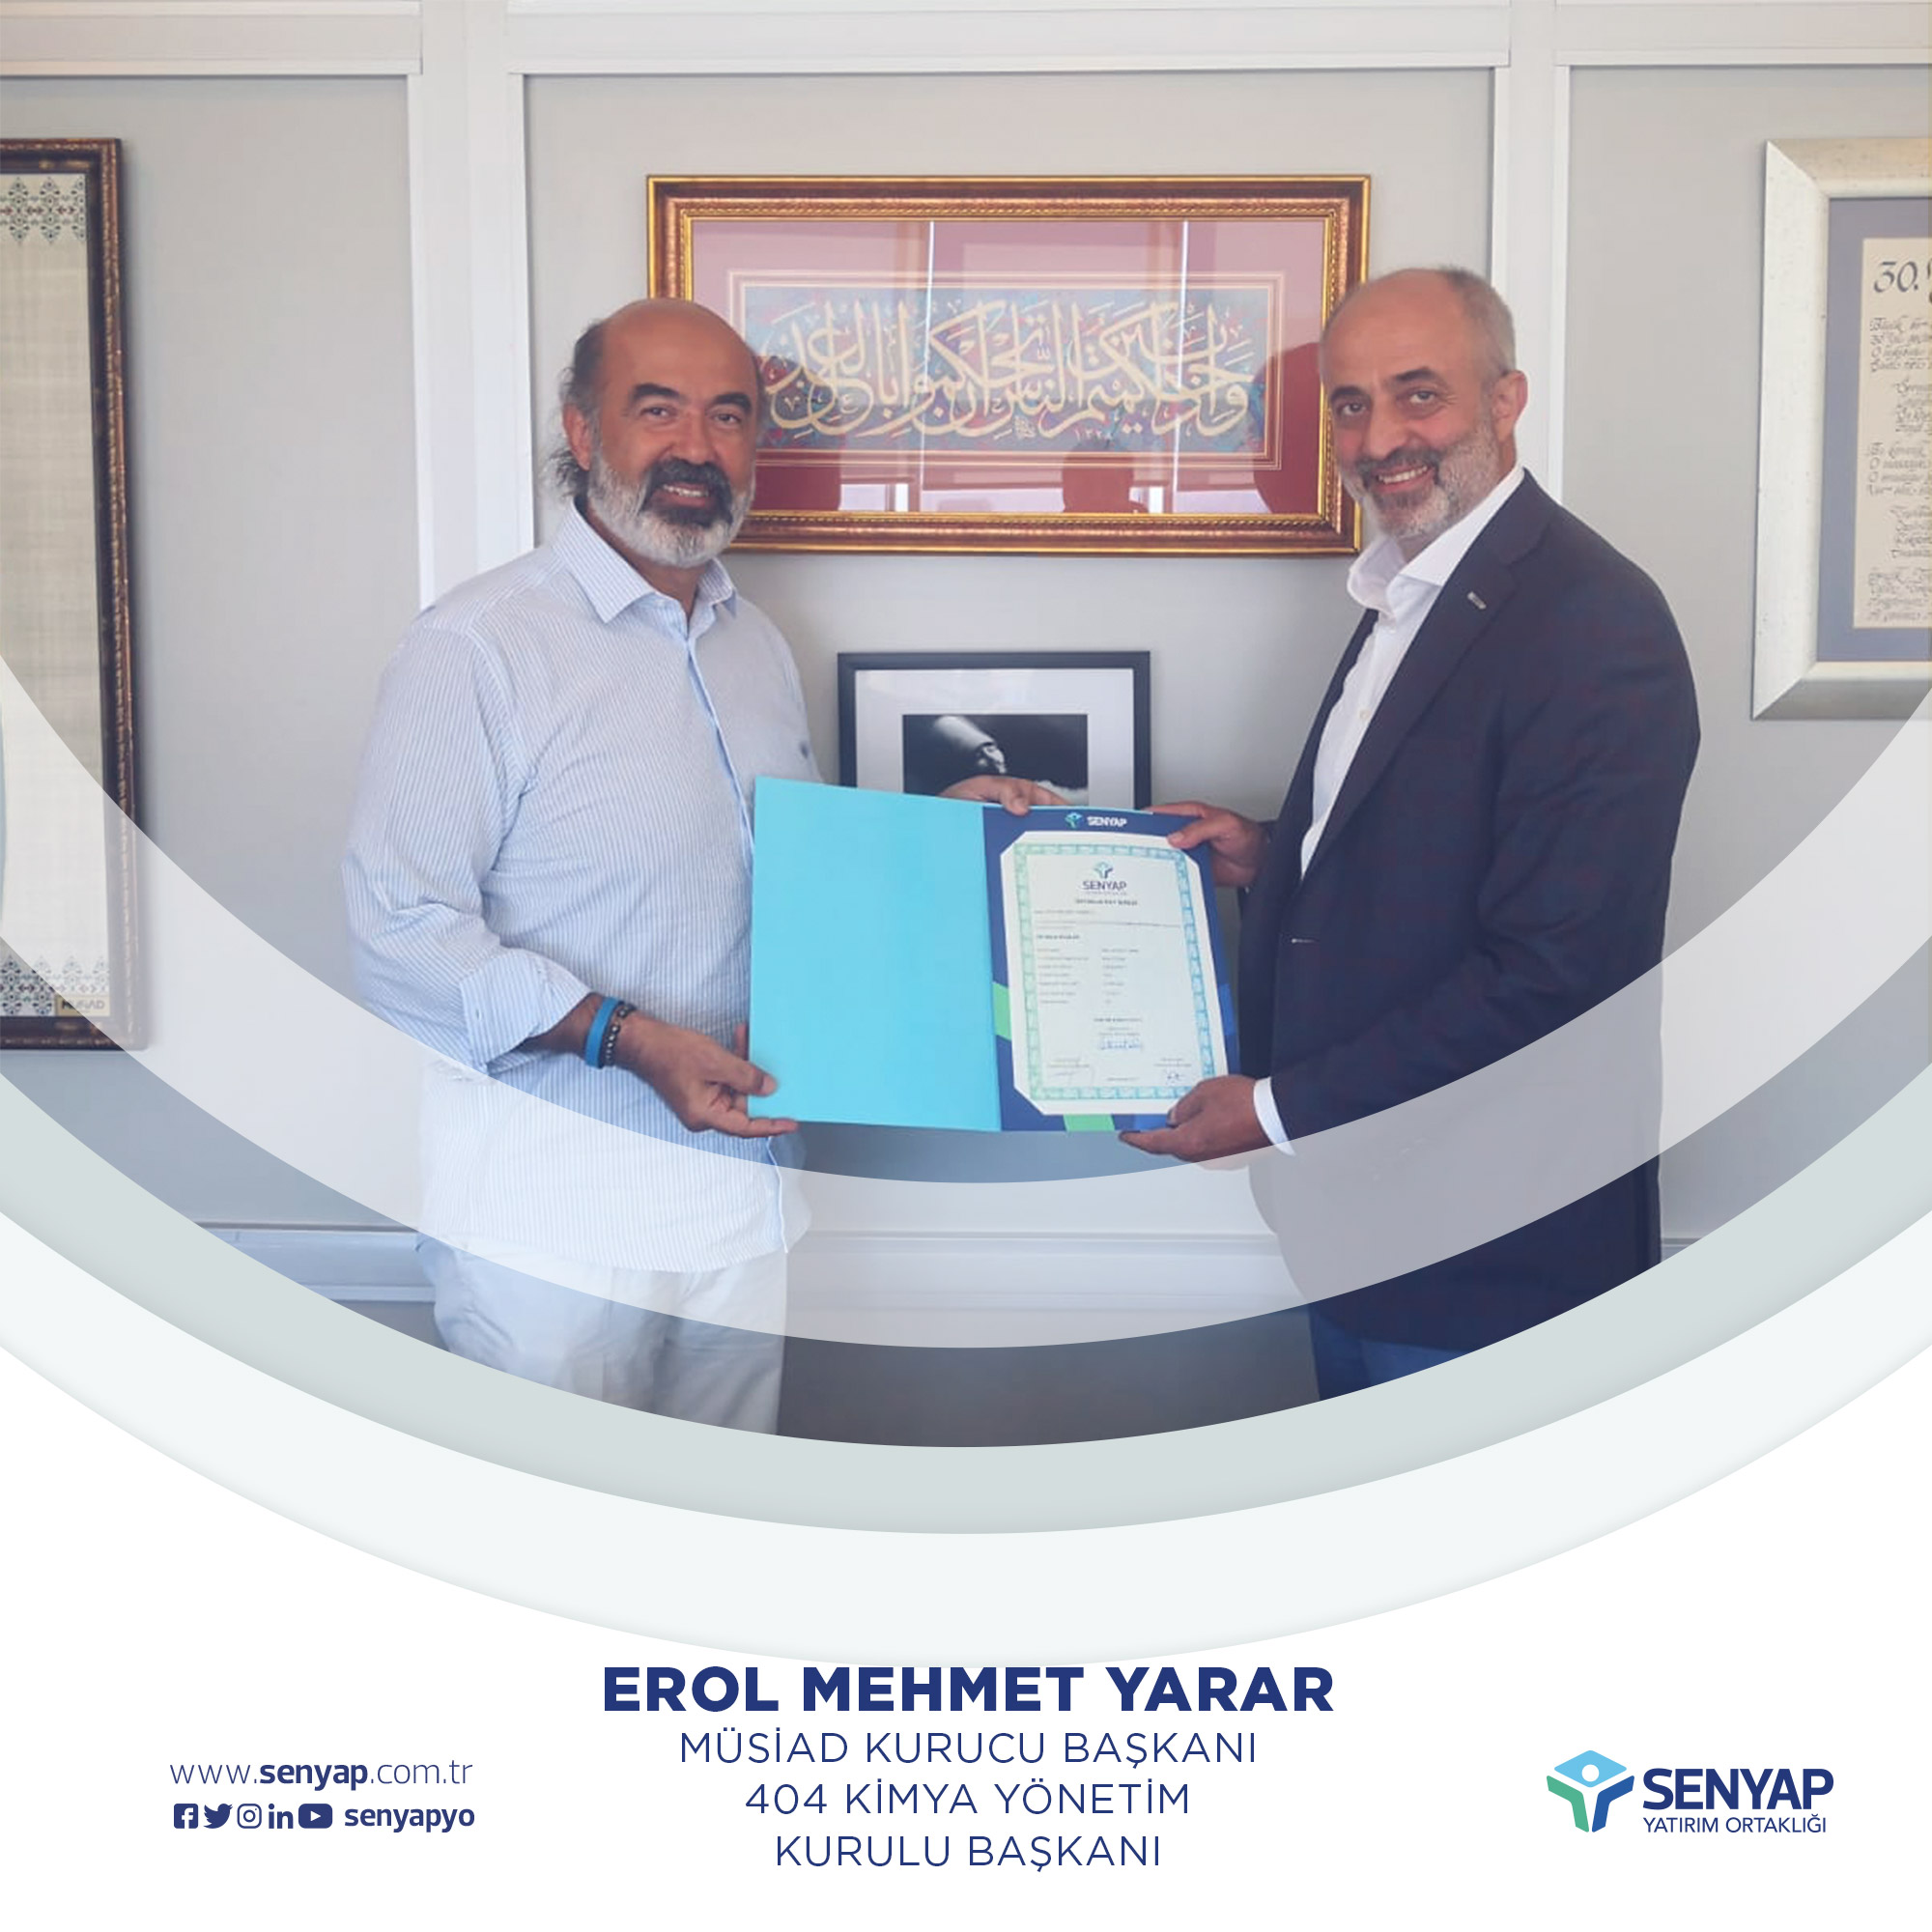 Erol Mehmet Yarar - MÜSİAD Kurucu Başkanı ve 404 Kimya Yönetim Kurulu Başkanı